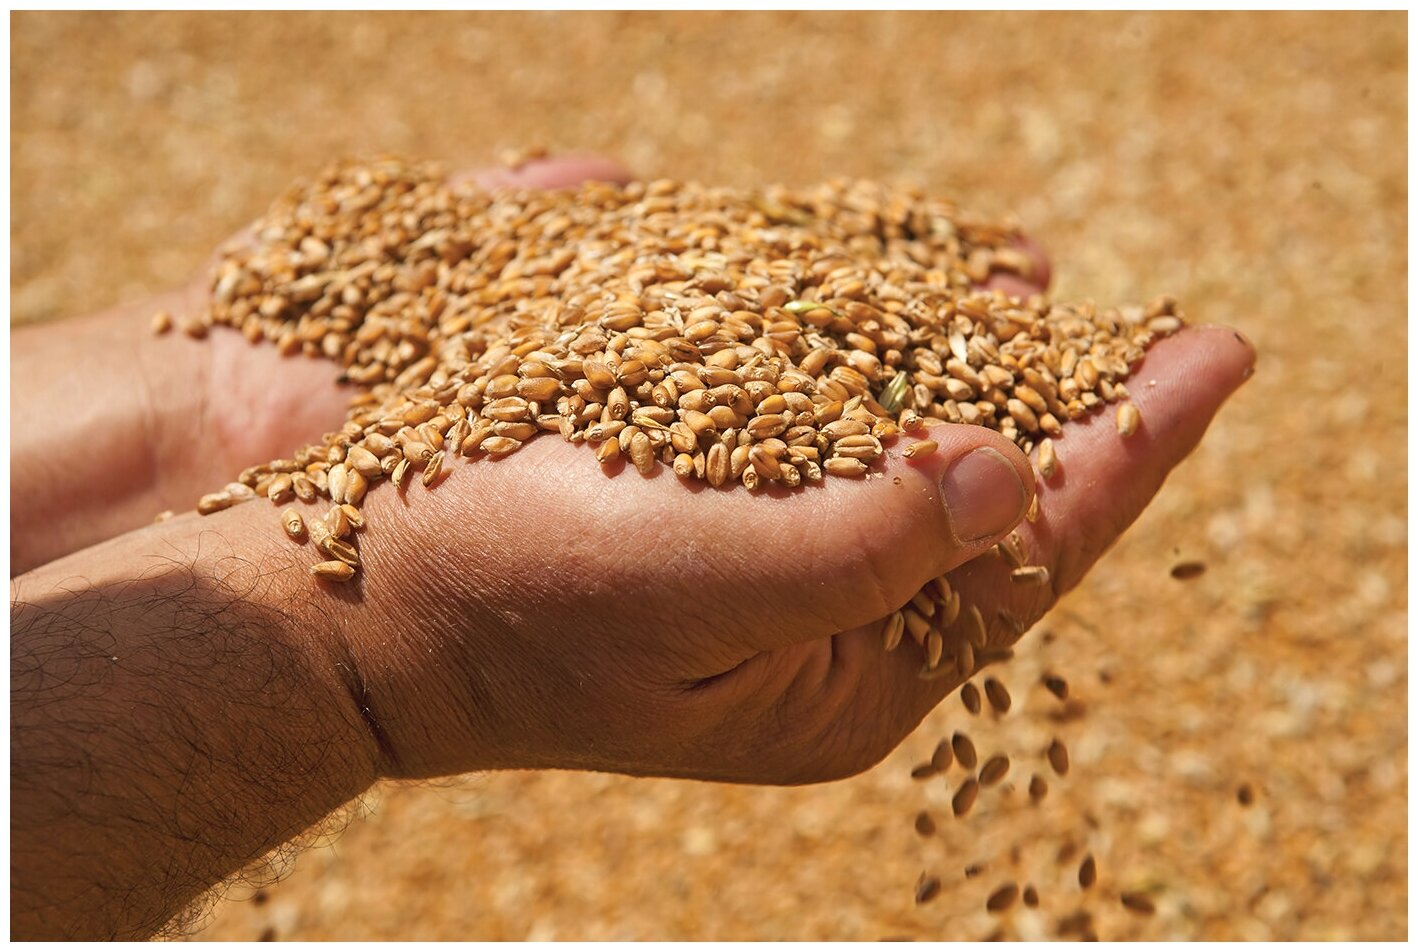 Пшеница свежее зерно в мешке 5кг не шлифованная Эко продукт для проращивания и пивоварения Алтайская - фотография № 6